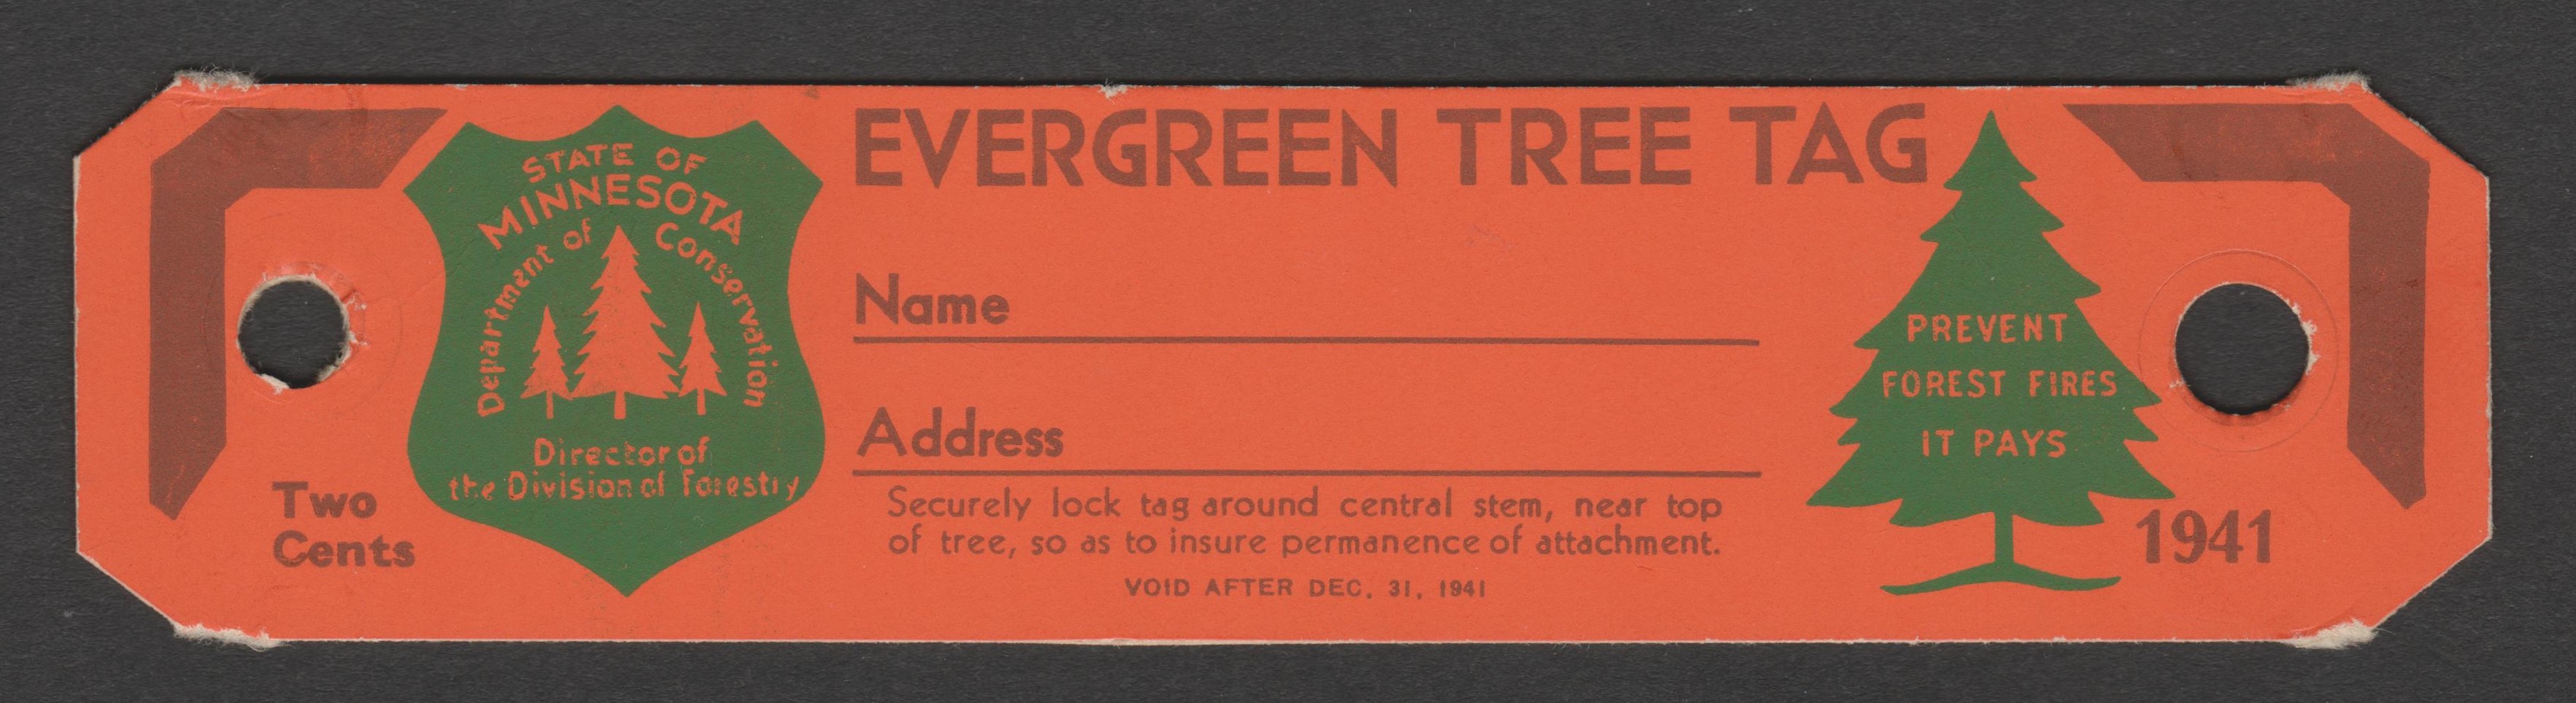 MN evergreen tree tag CT10 2c unused VF, 1941 P